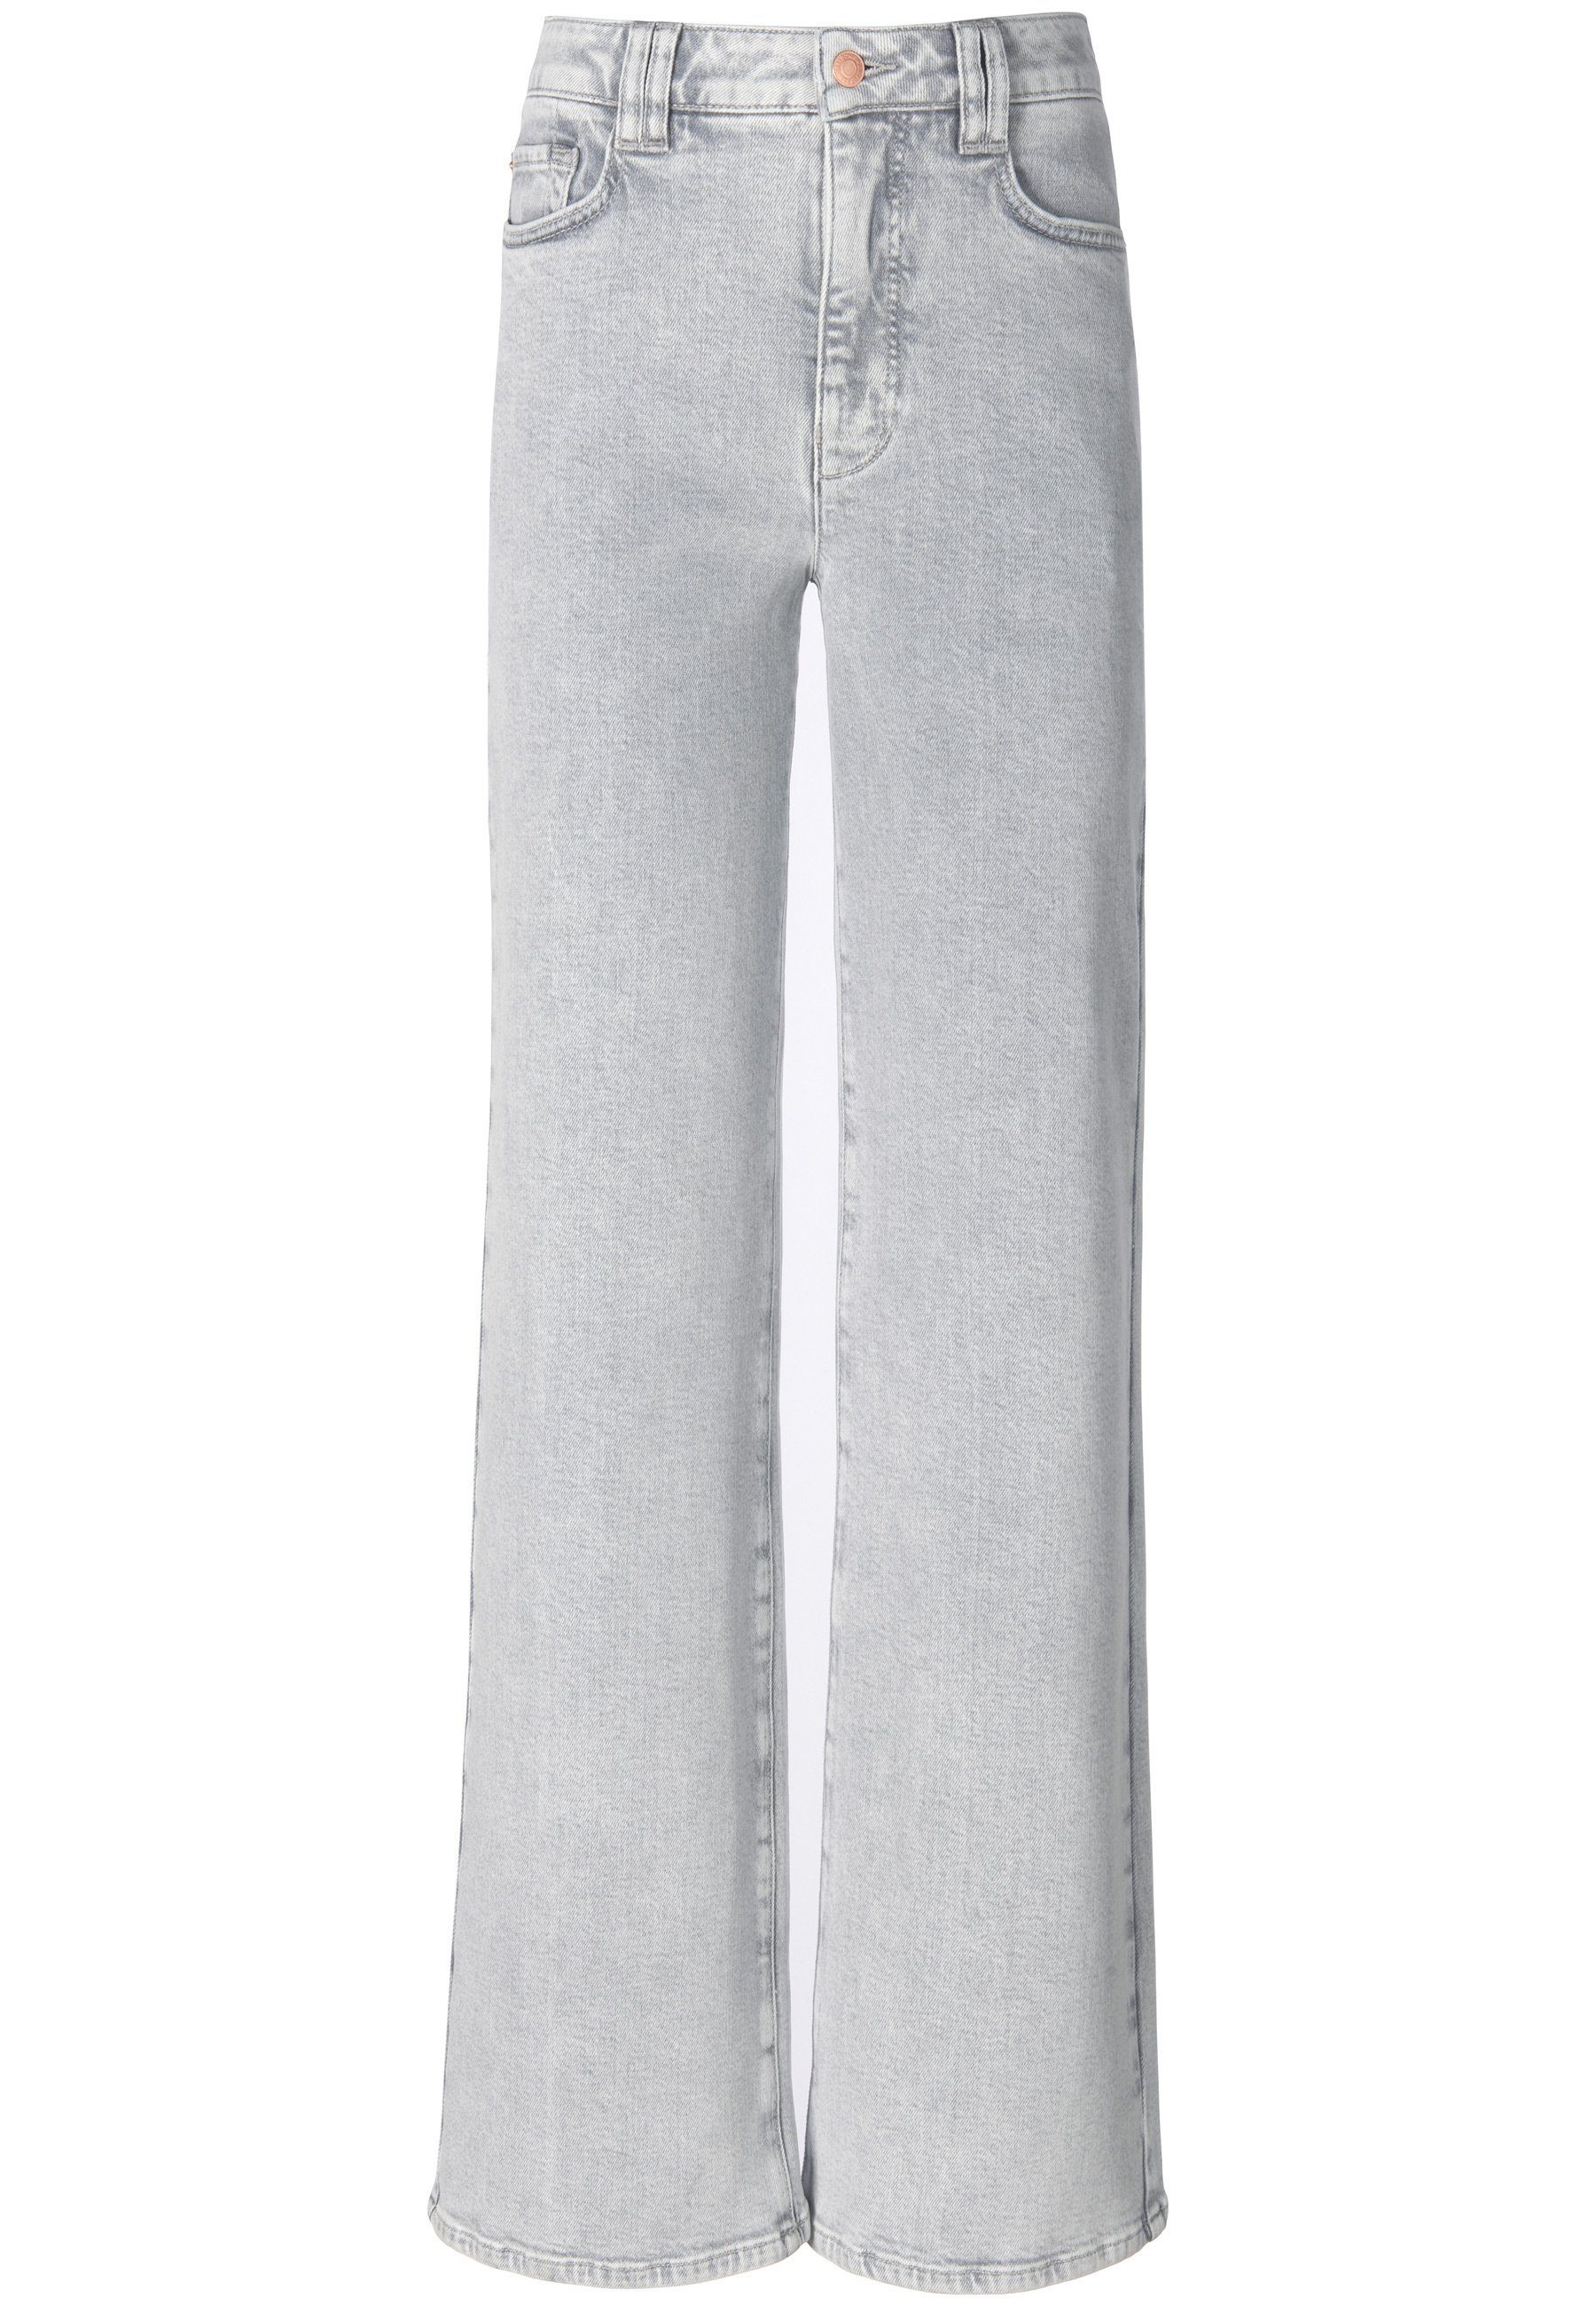 Taschen DAY.LIKE Cotton grau mit 5-Pocket-Jeans